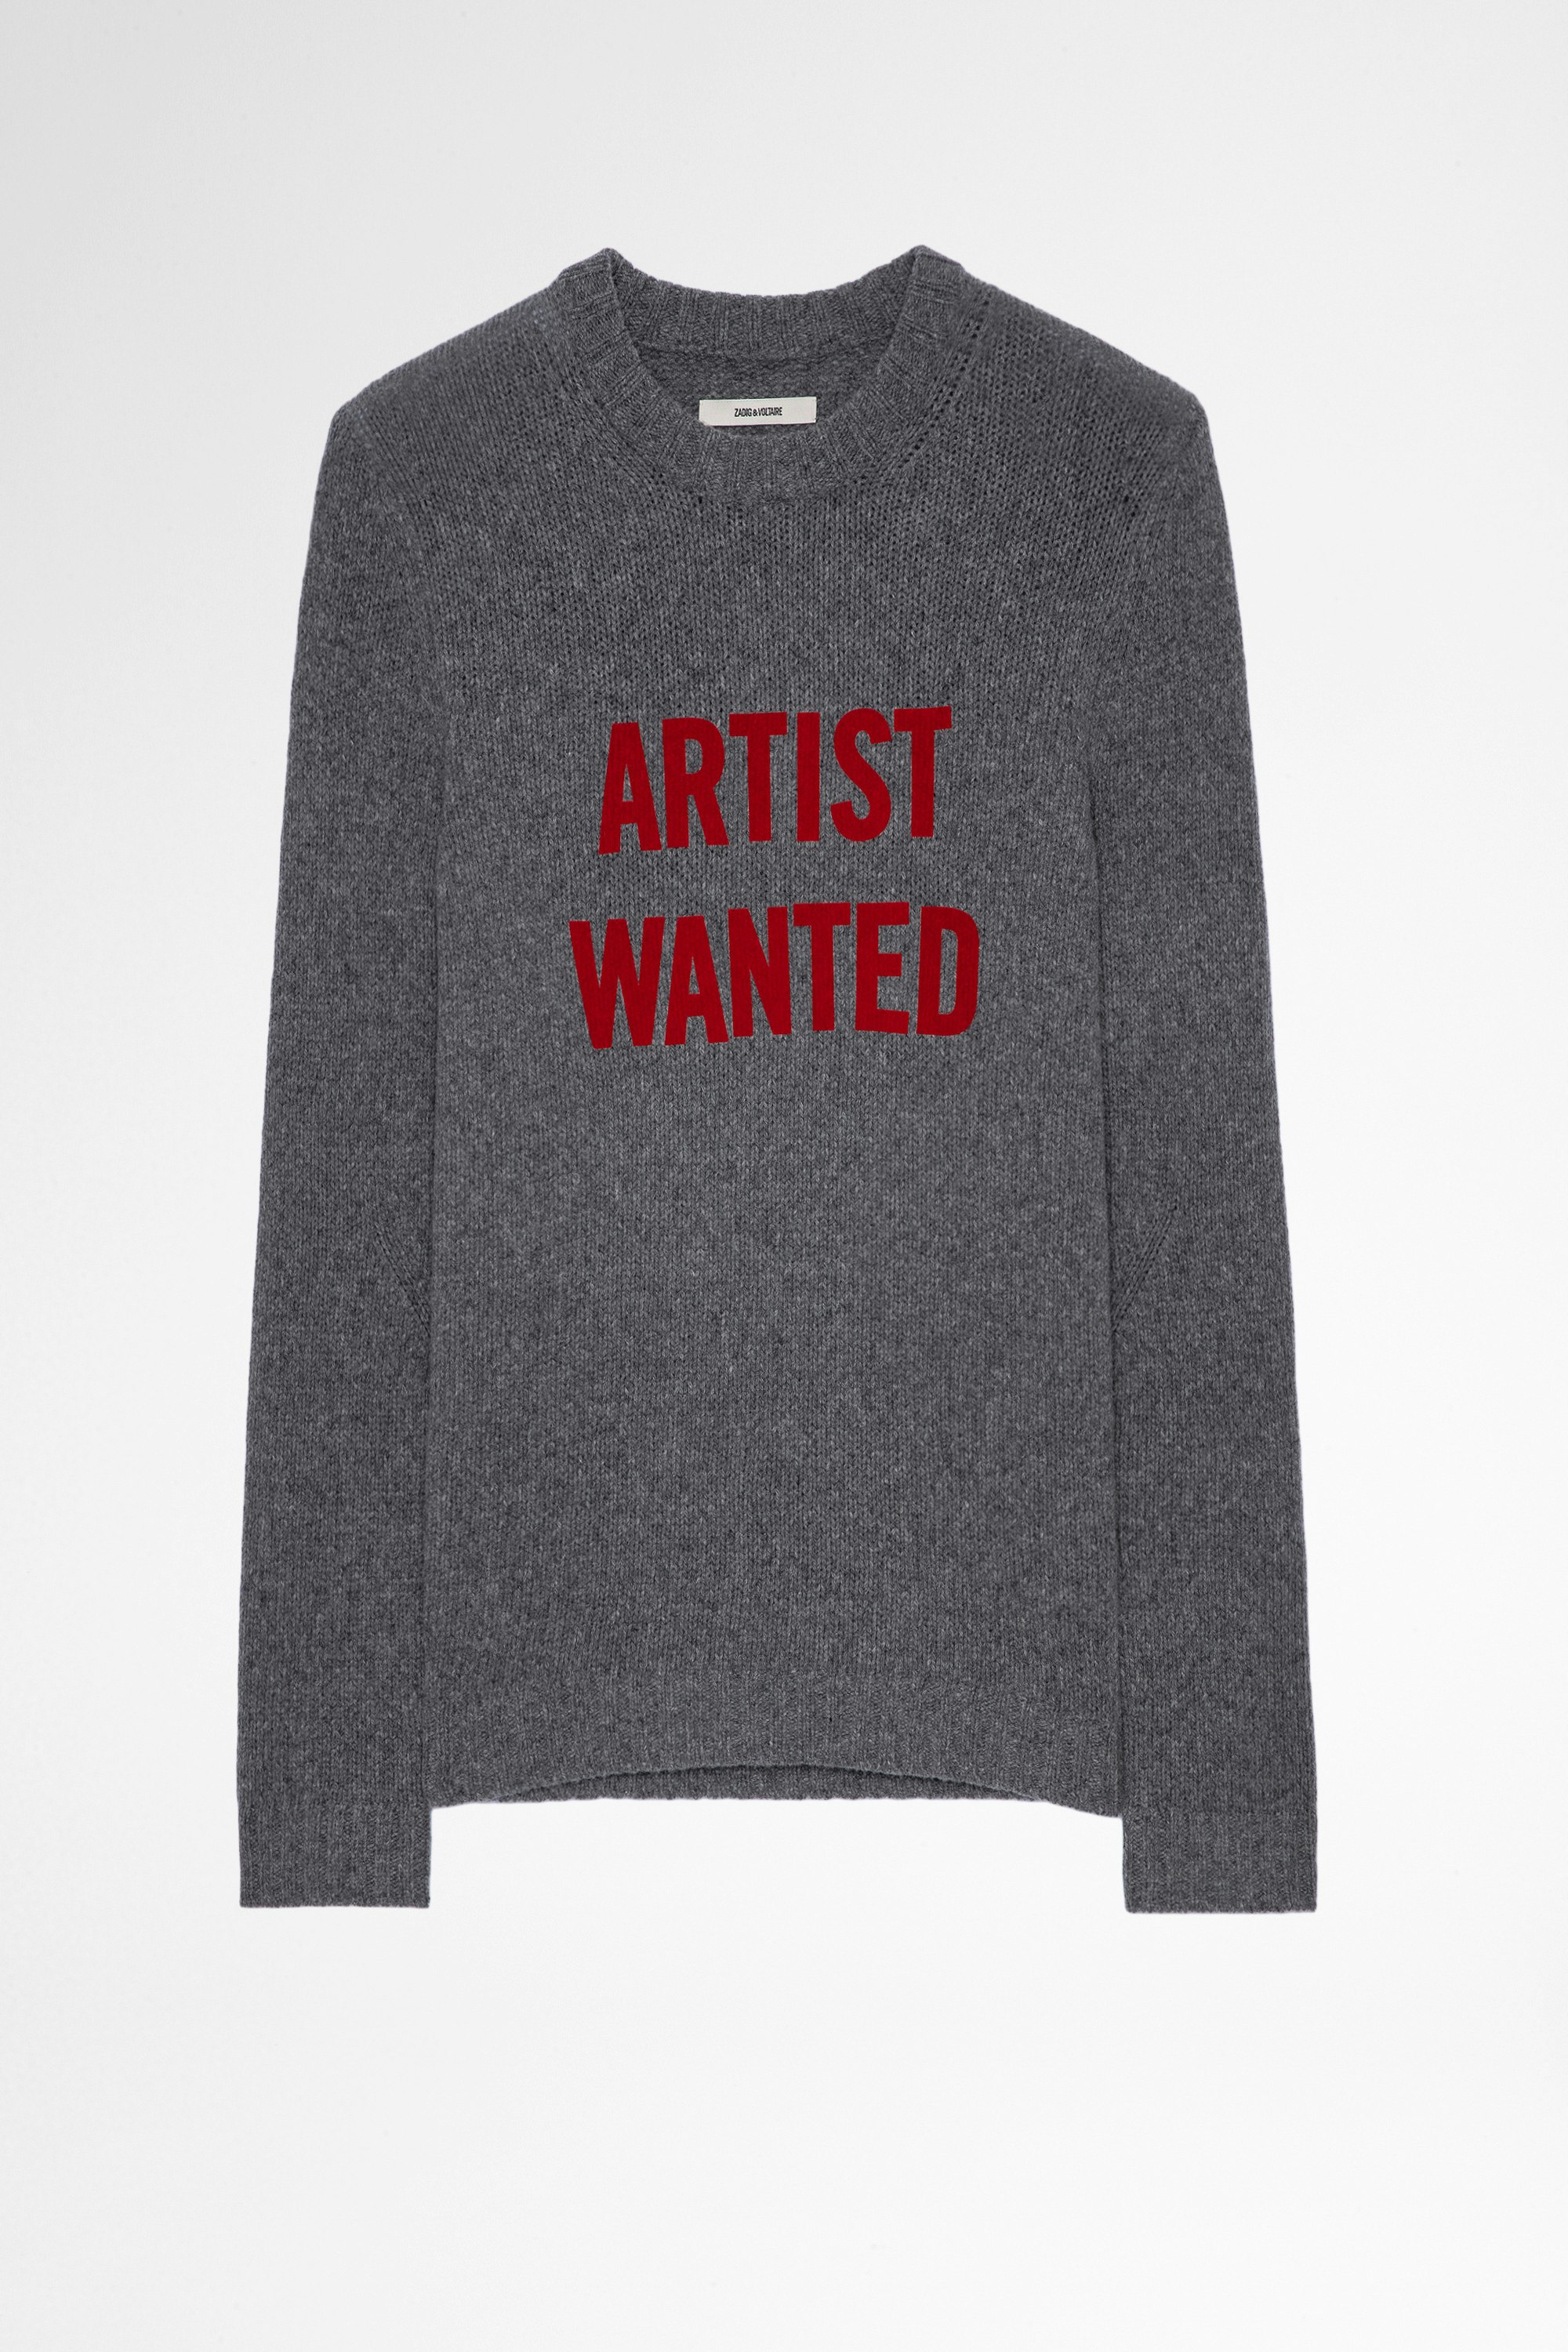 Jersey Kennedy Artist Wanted Jersey de hombre de lana merina gris Artist Wanted